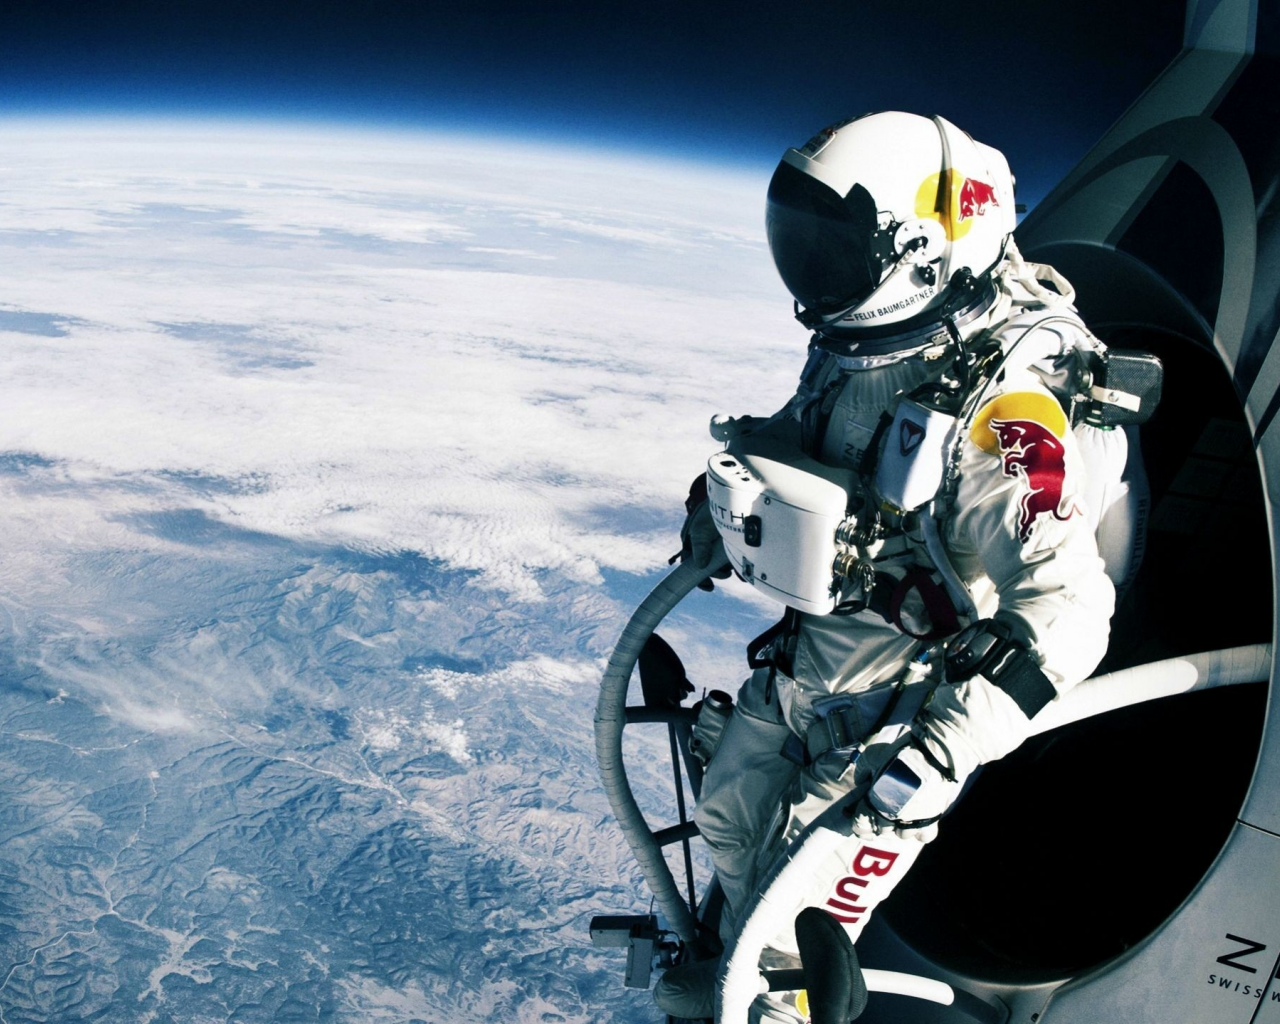 прыжок, космос, red bull, спортсмен, Felix baumgartner, полёт